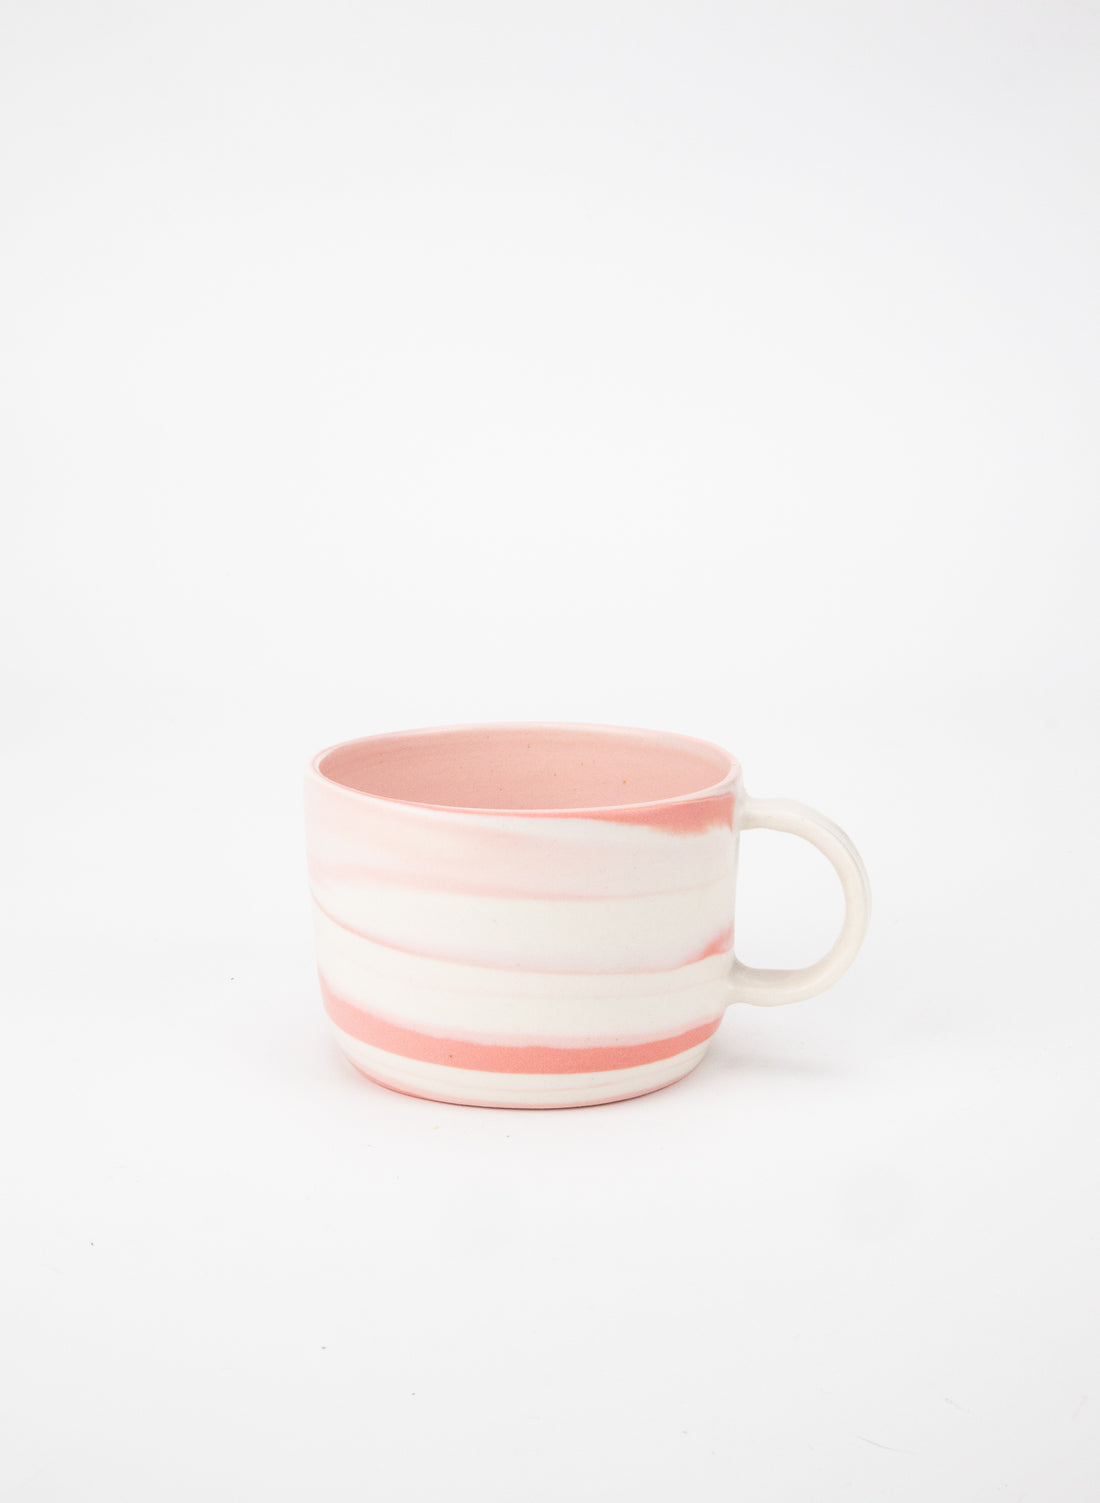 Thrown Pinks Mug - Large